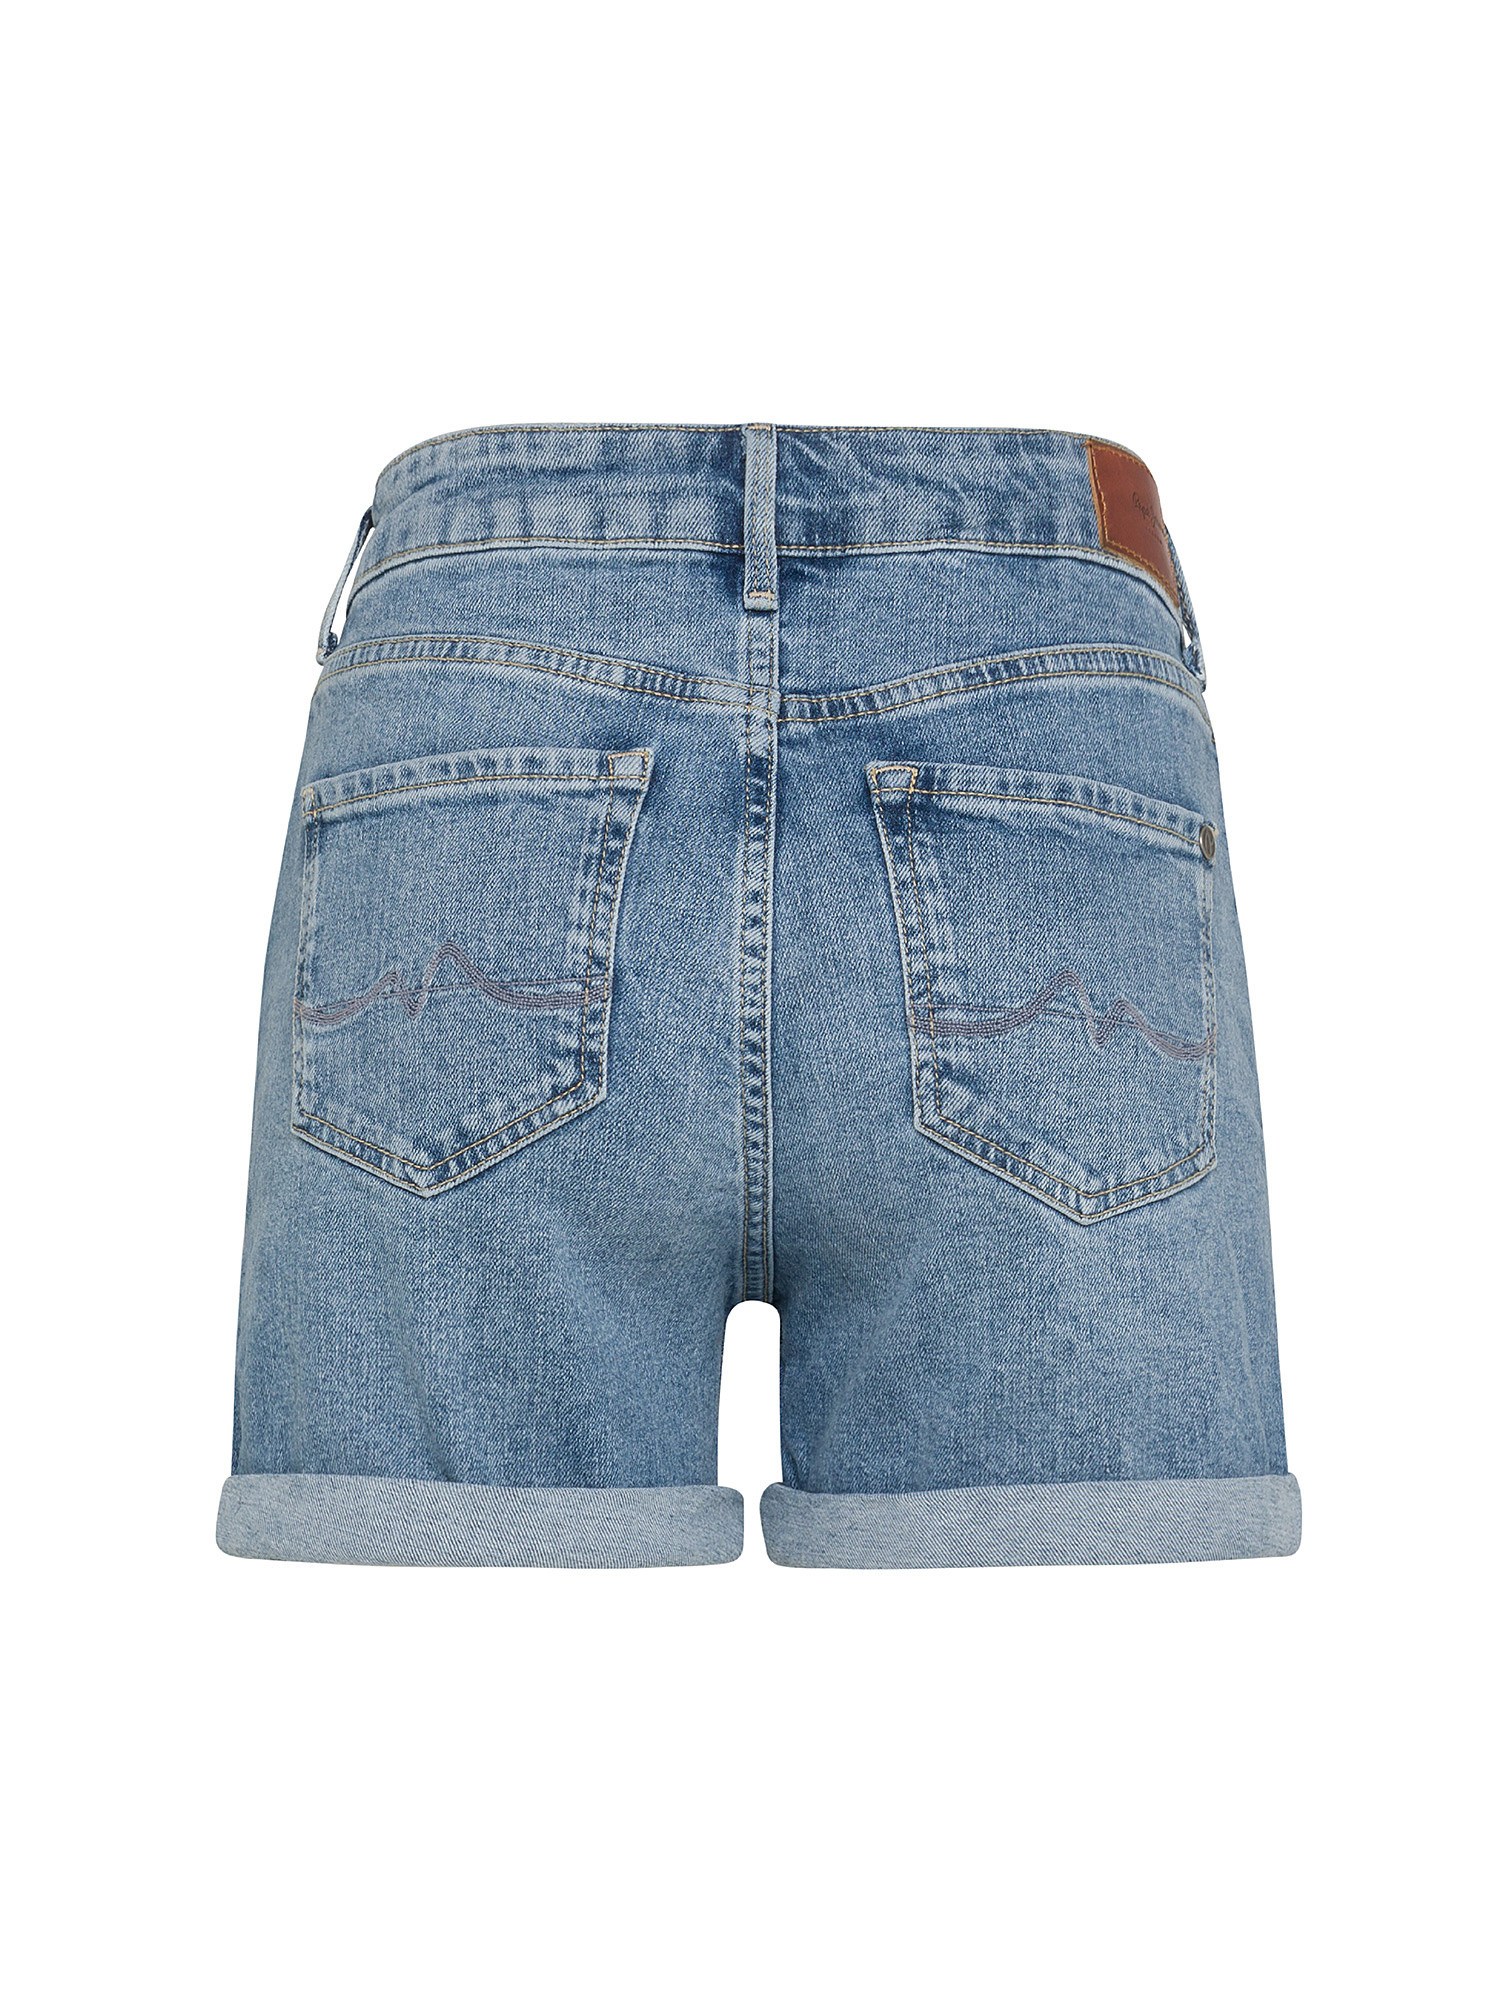 Pepe Jeans - Five-pocket denim shorts, Denim, large image number 1